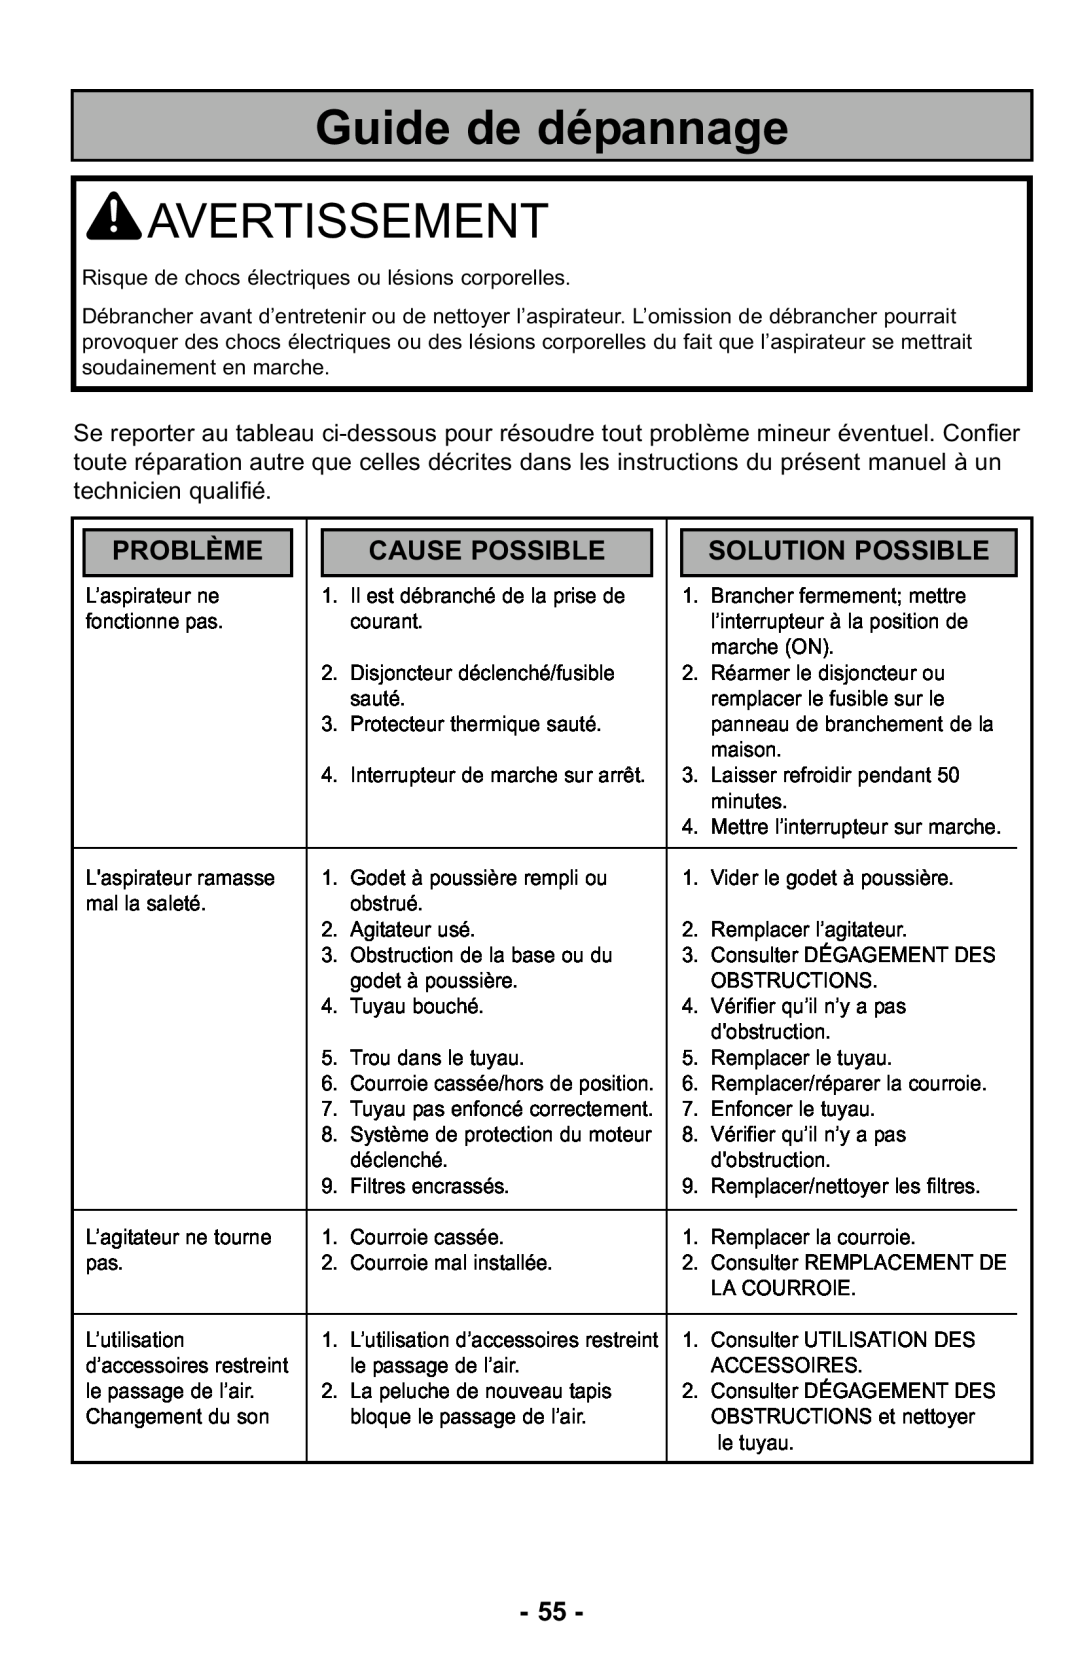 Panasonic MC-UL425 manuel dutilisation Guide de dépannage, Problème, Cause Possible, Solution Possible, Avertissement 